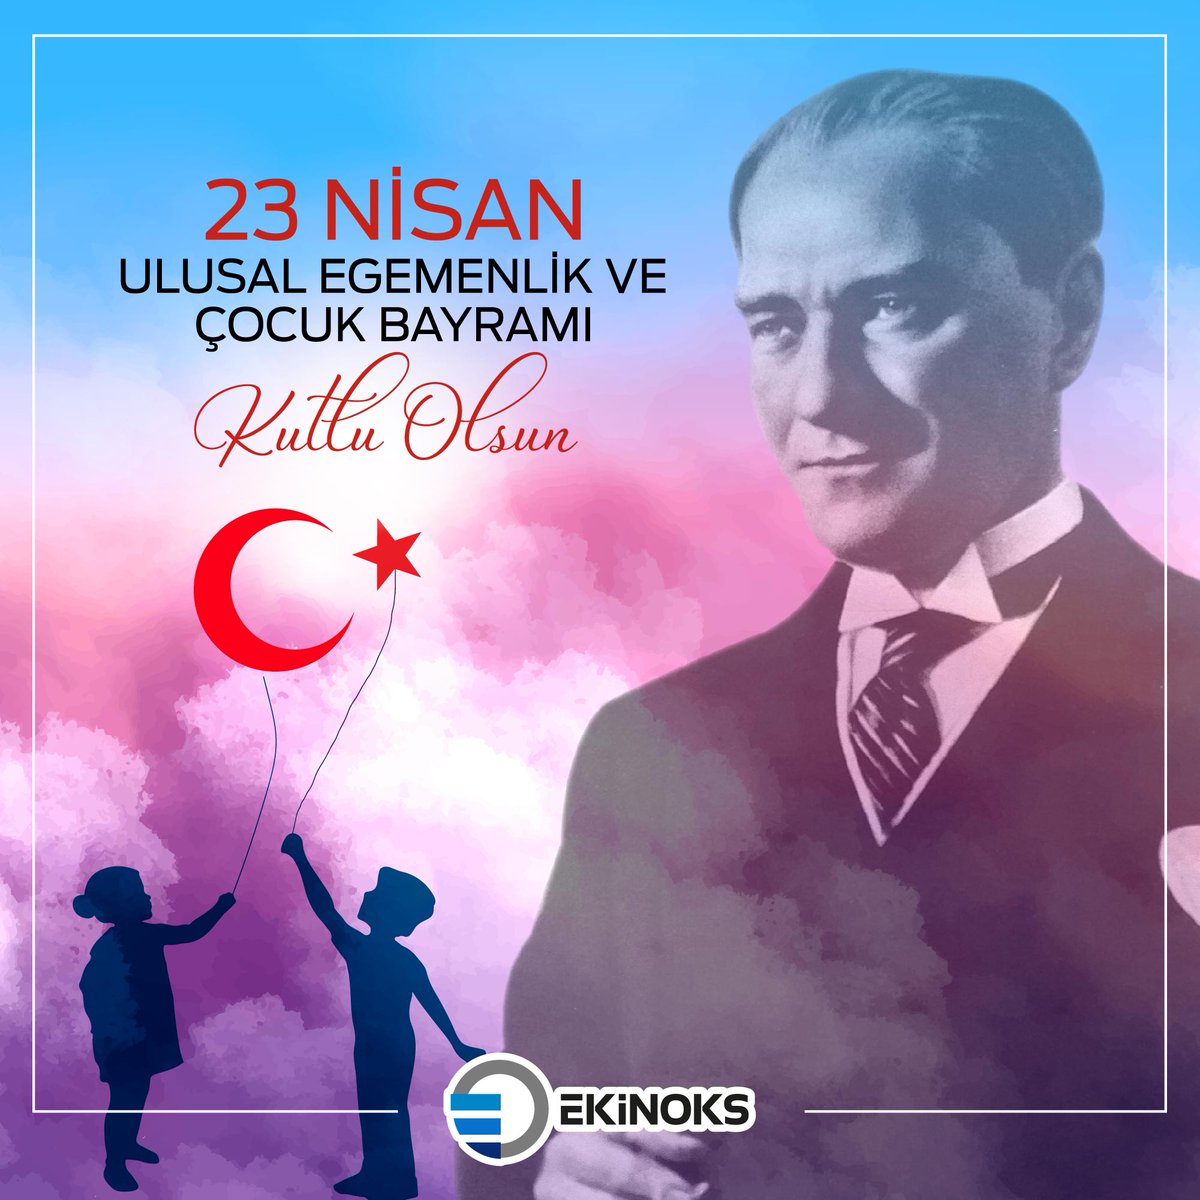 23 Nisan Ulusal Egemenlik ve Çocuk Bayramı Kutlu Olsun...

#23Nisan #ulusalegemenlik #çocukbayramı #mustafakemal #atatürk
#ekinoks #ekinoksinternational